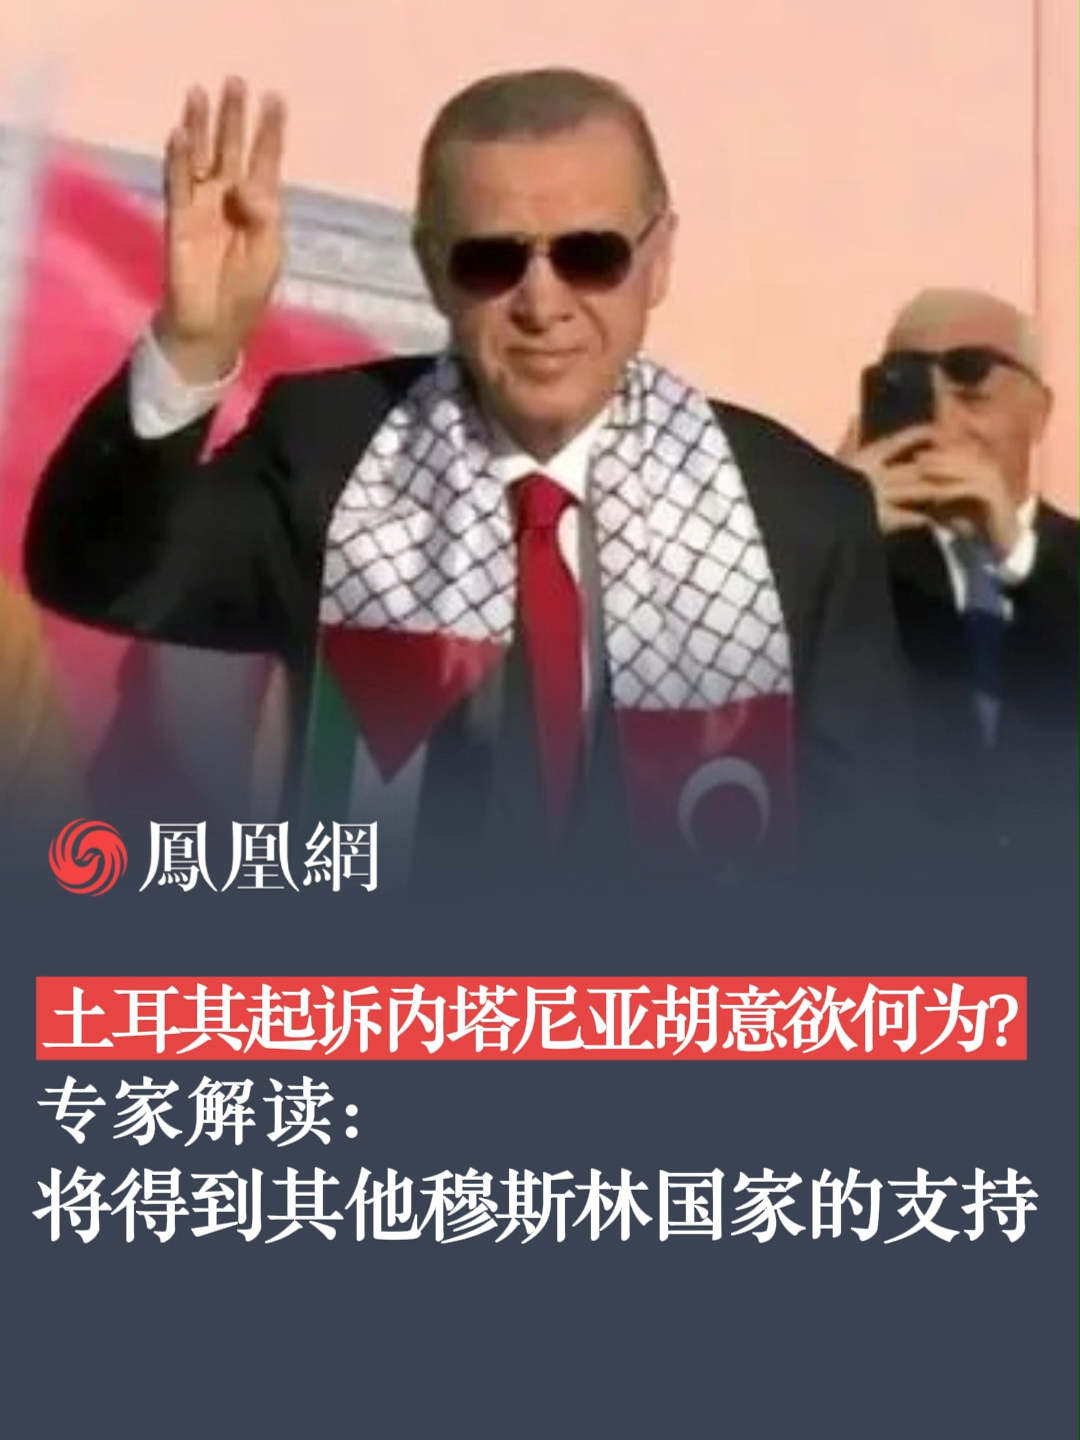 土以交恶 土耳其总统取消访问以色列